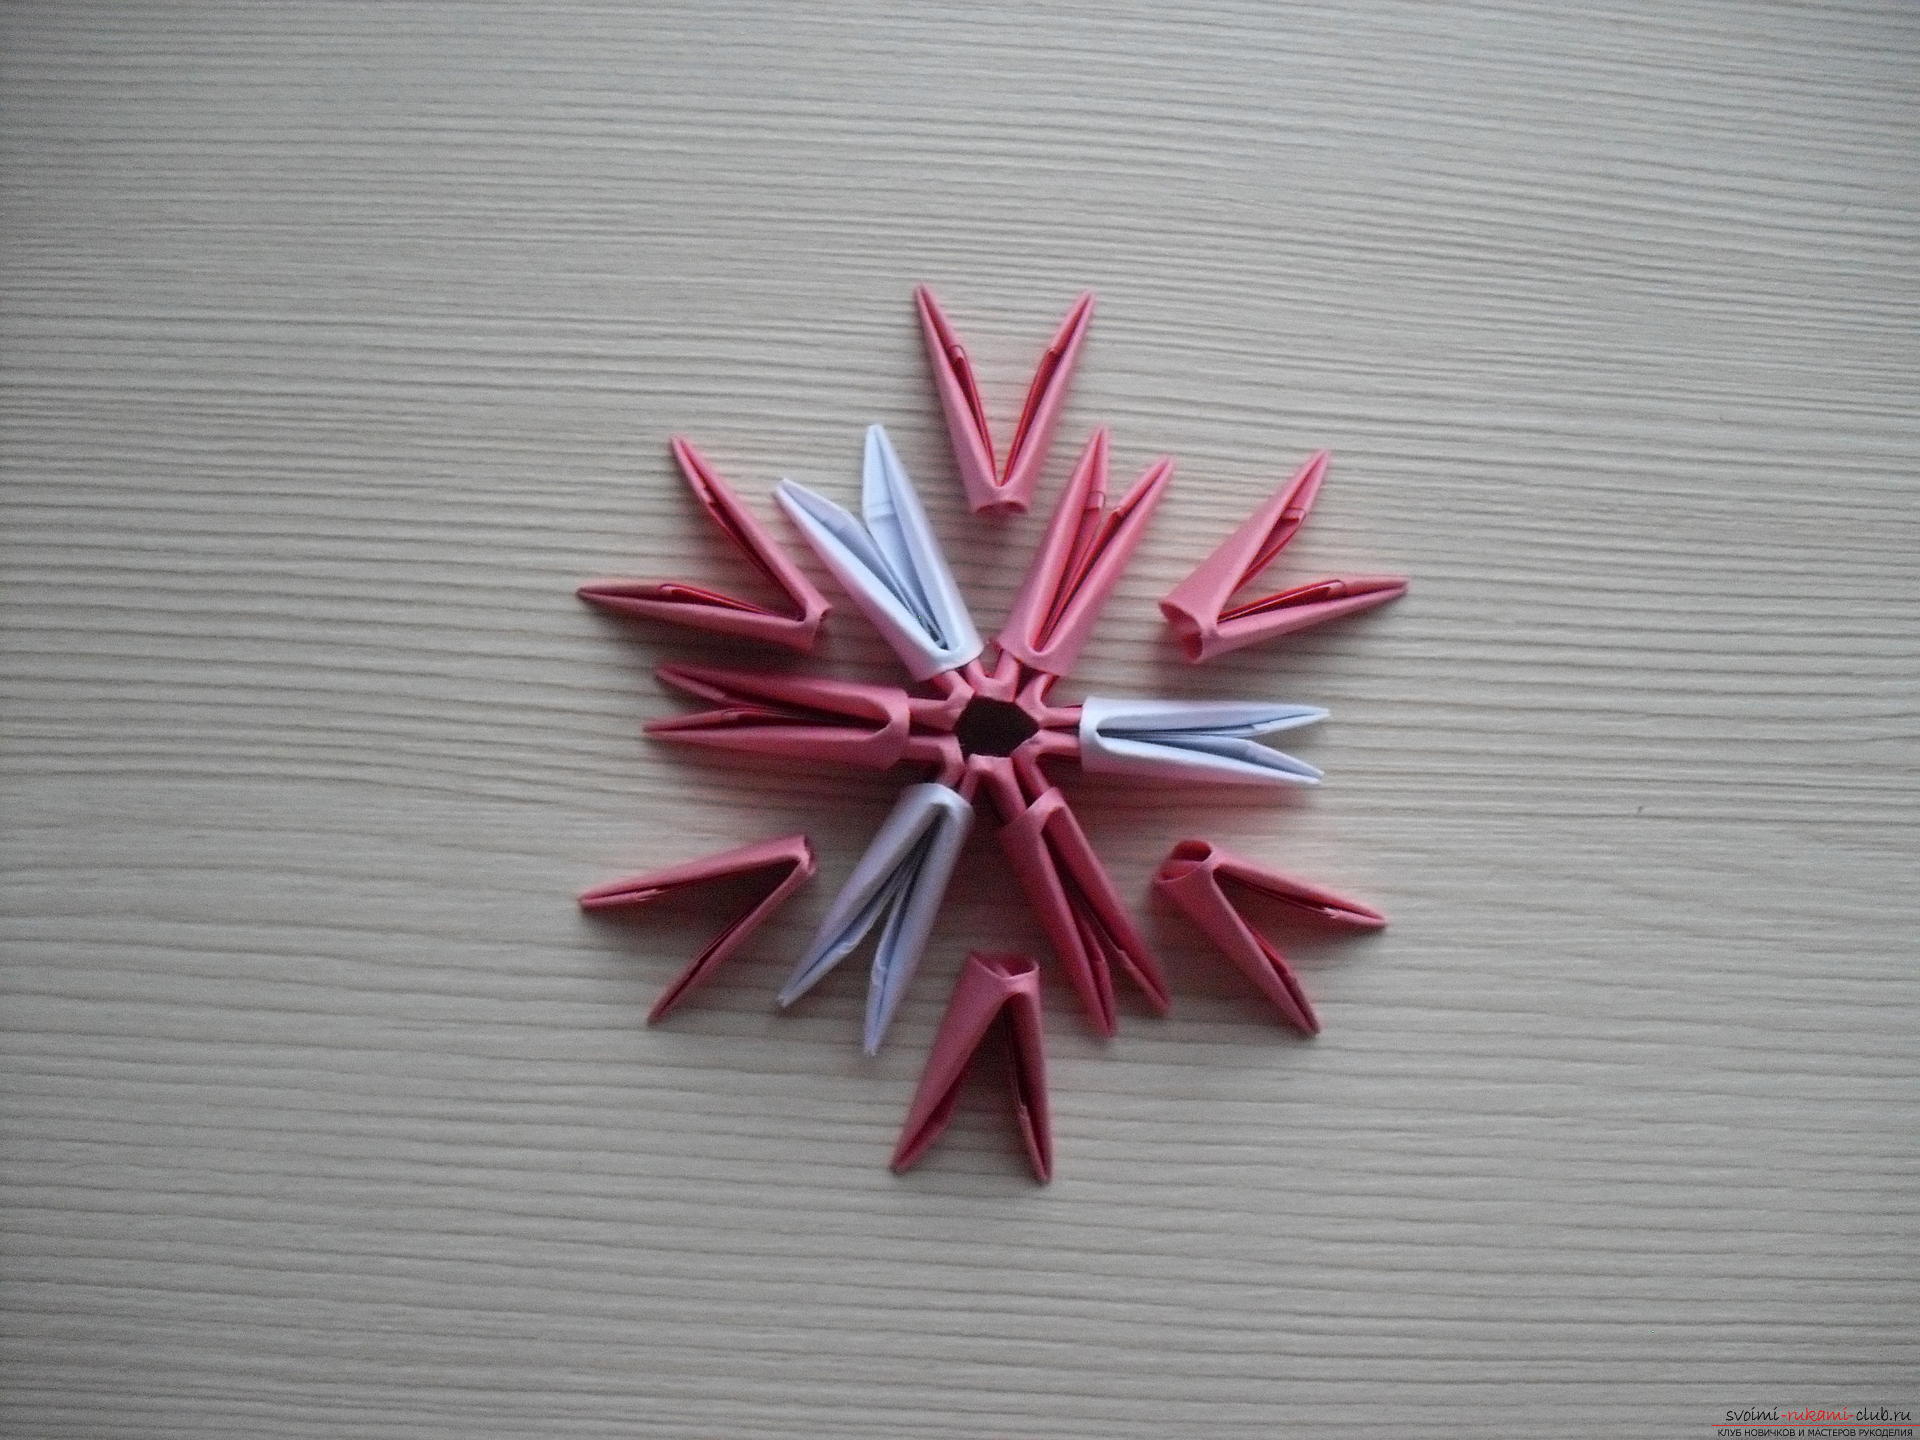 Этот мастер-класс научит как сделать модульное оригами - гриб мухомор.. Фото №4